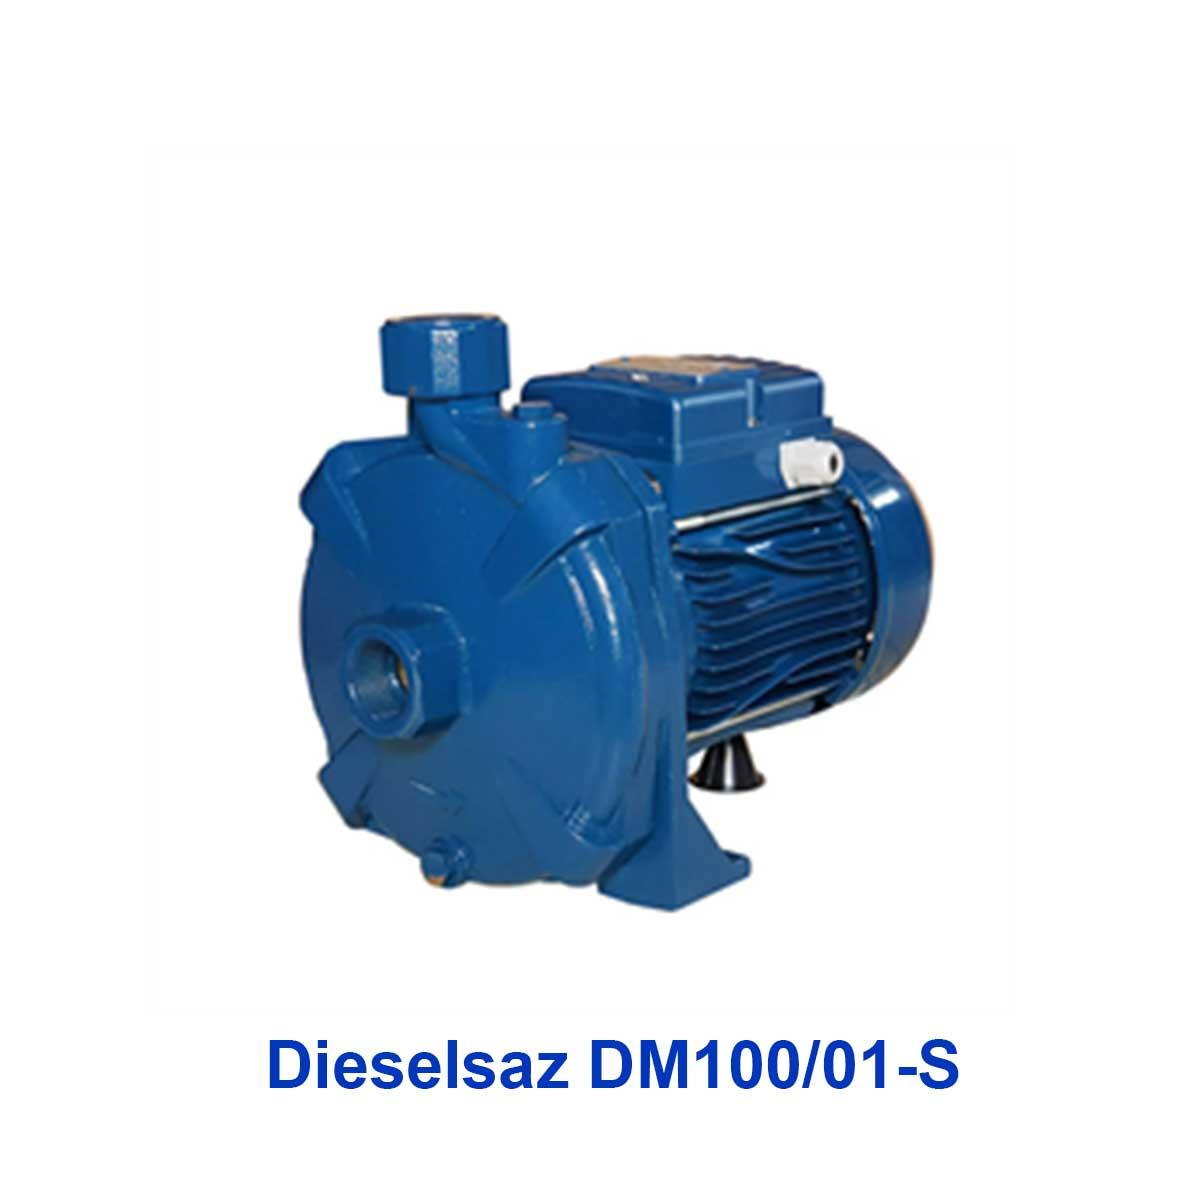 پمپ آب بشقابی دیزل ساز مدل Dieselsaz DM100/01-S